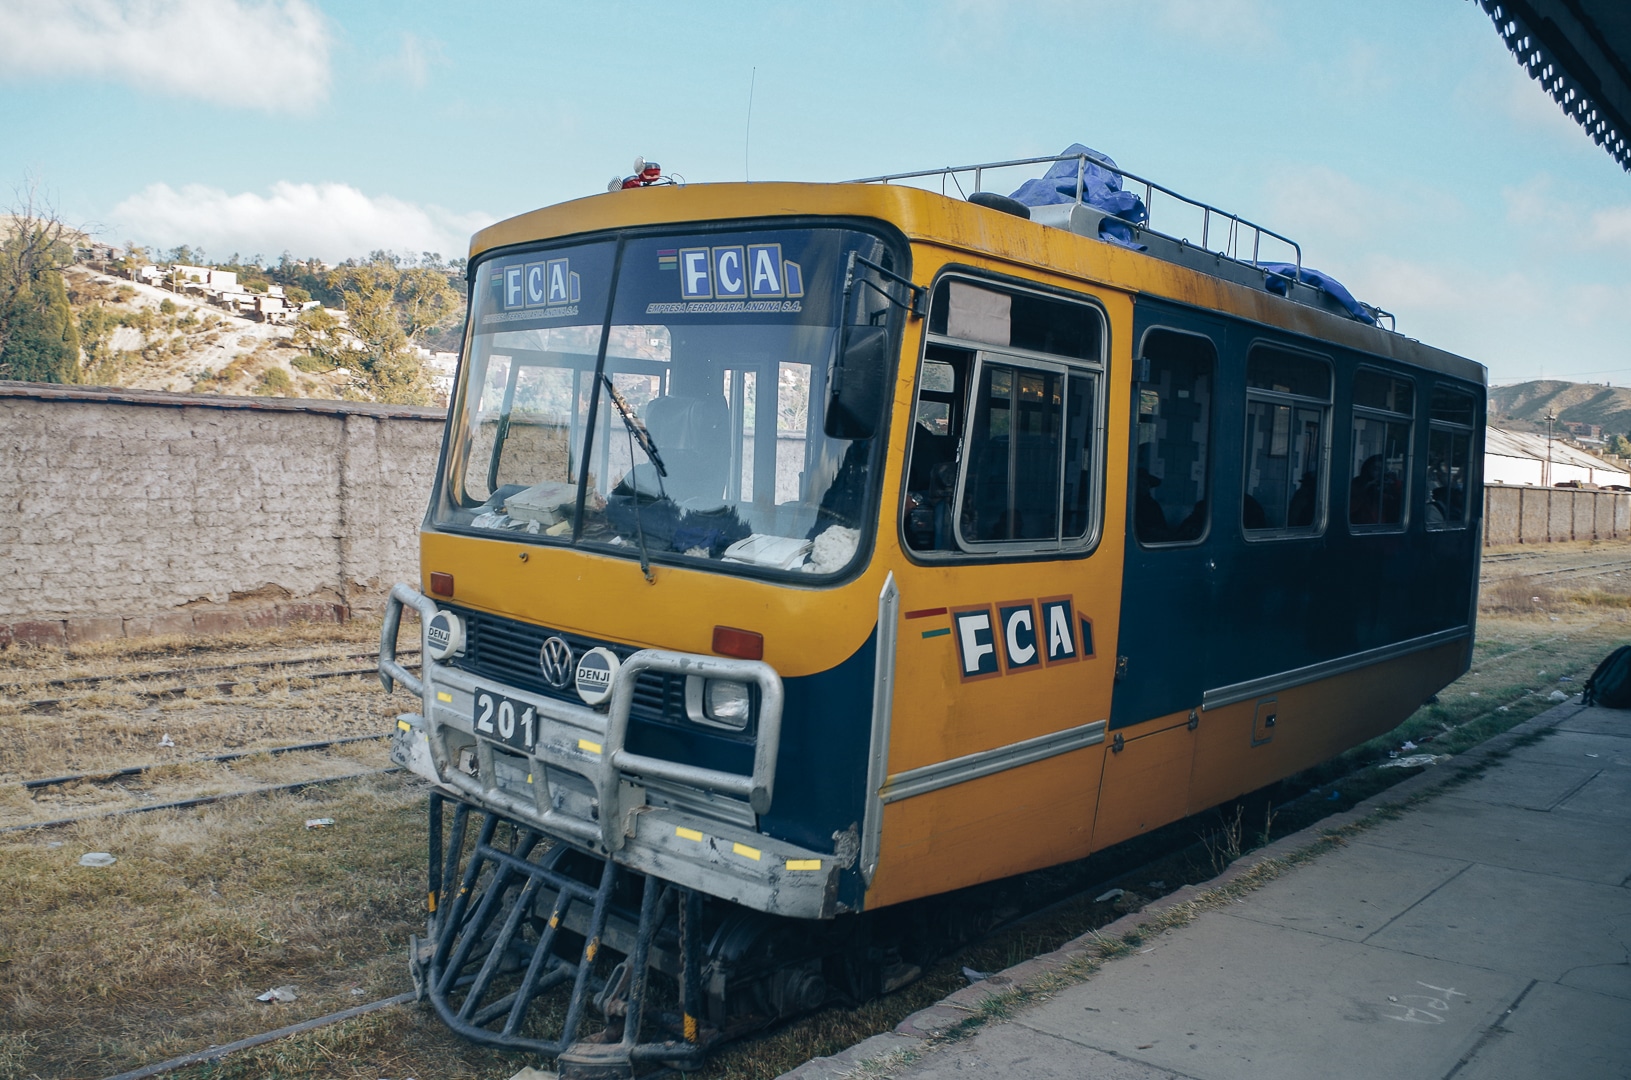 Bus Carril voyager autrement bolivie